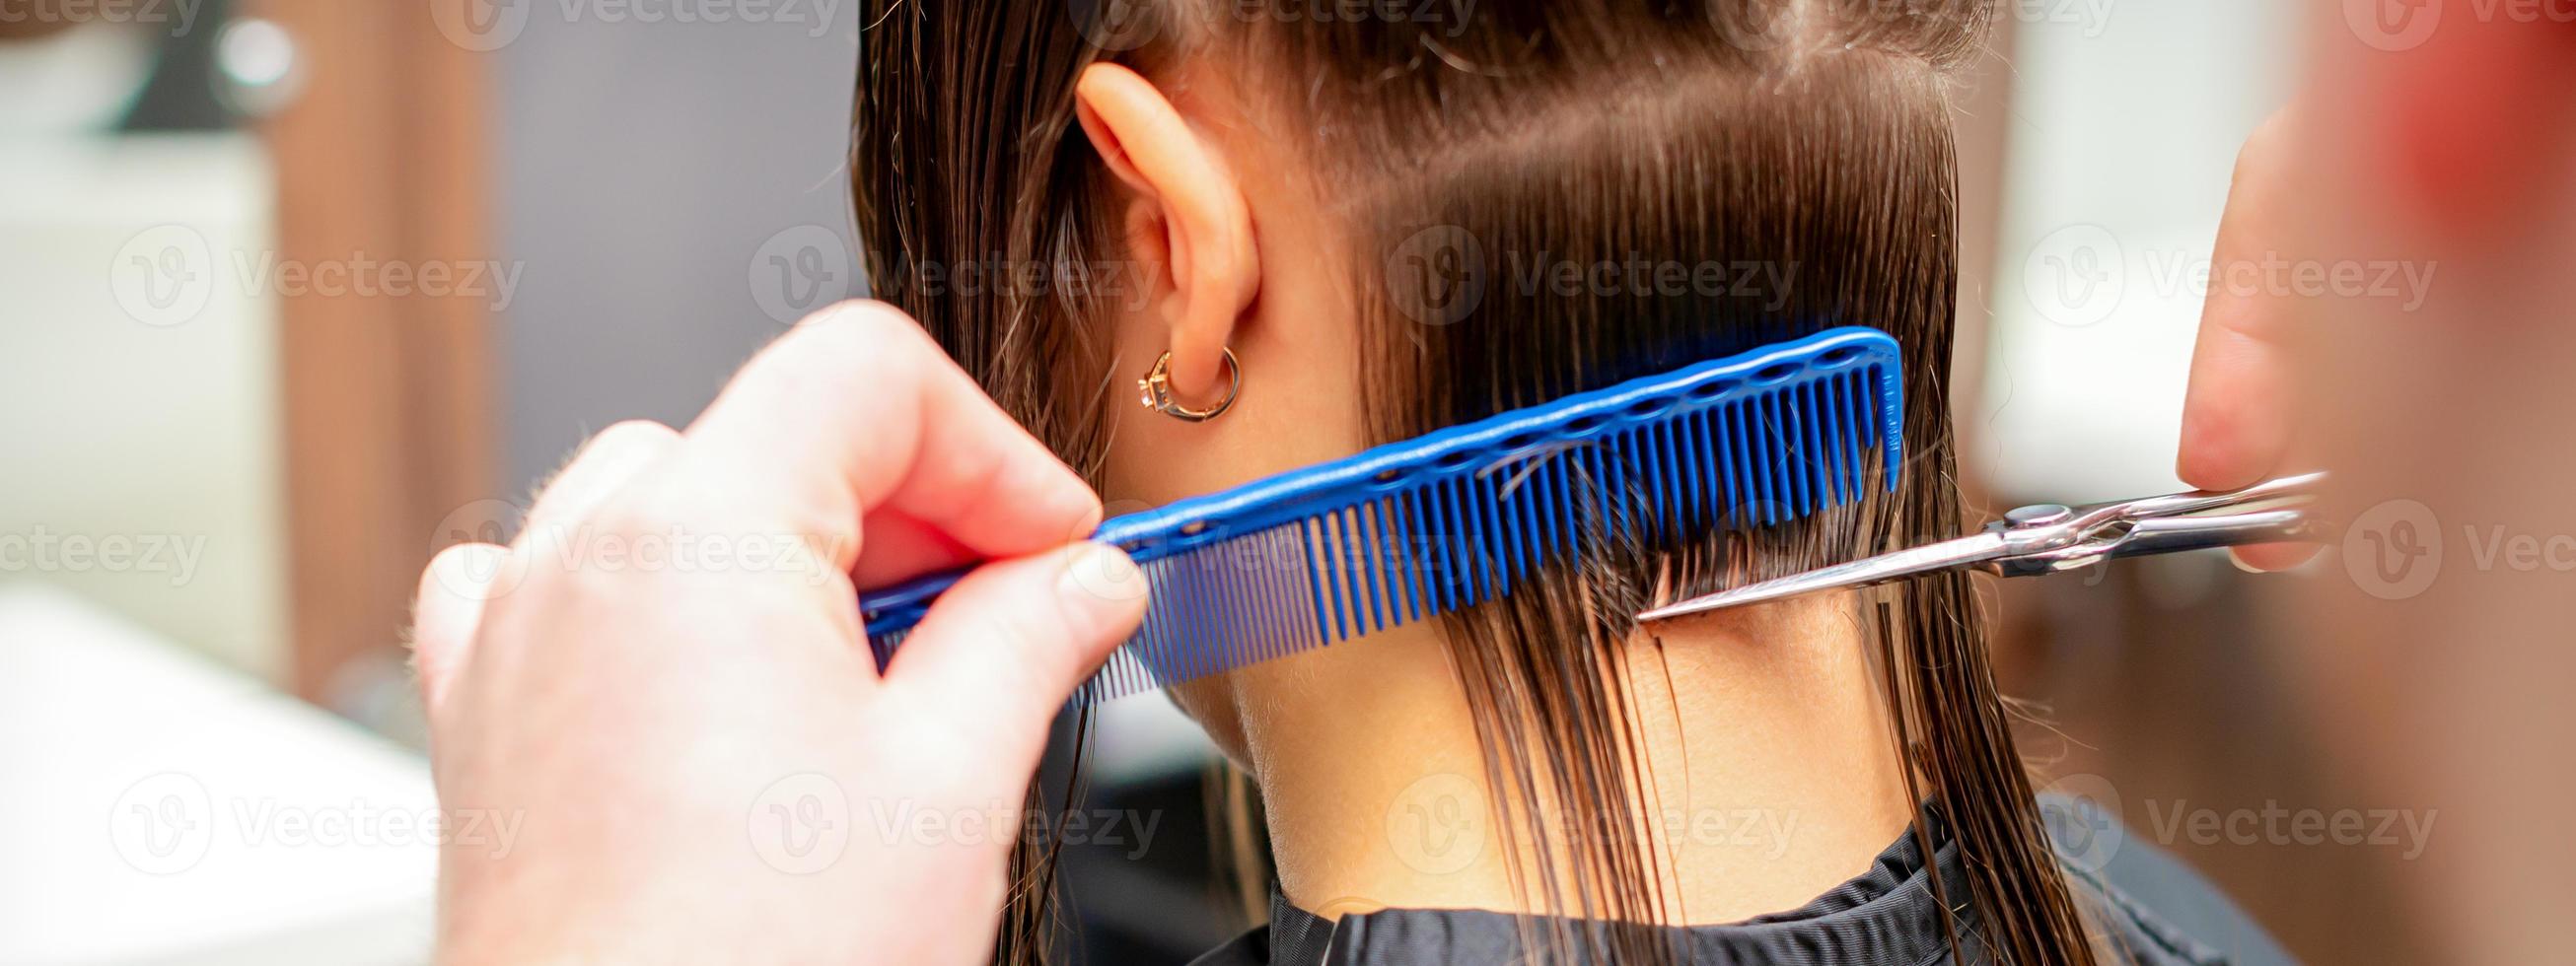 parrucchiere tagli via lungo capelli di donna foto